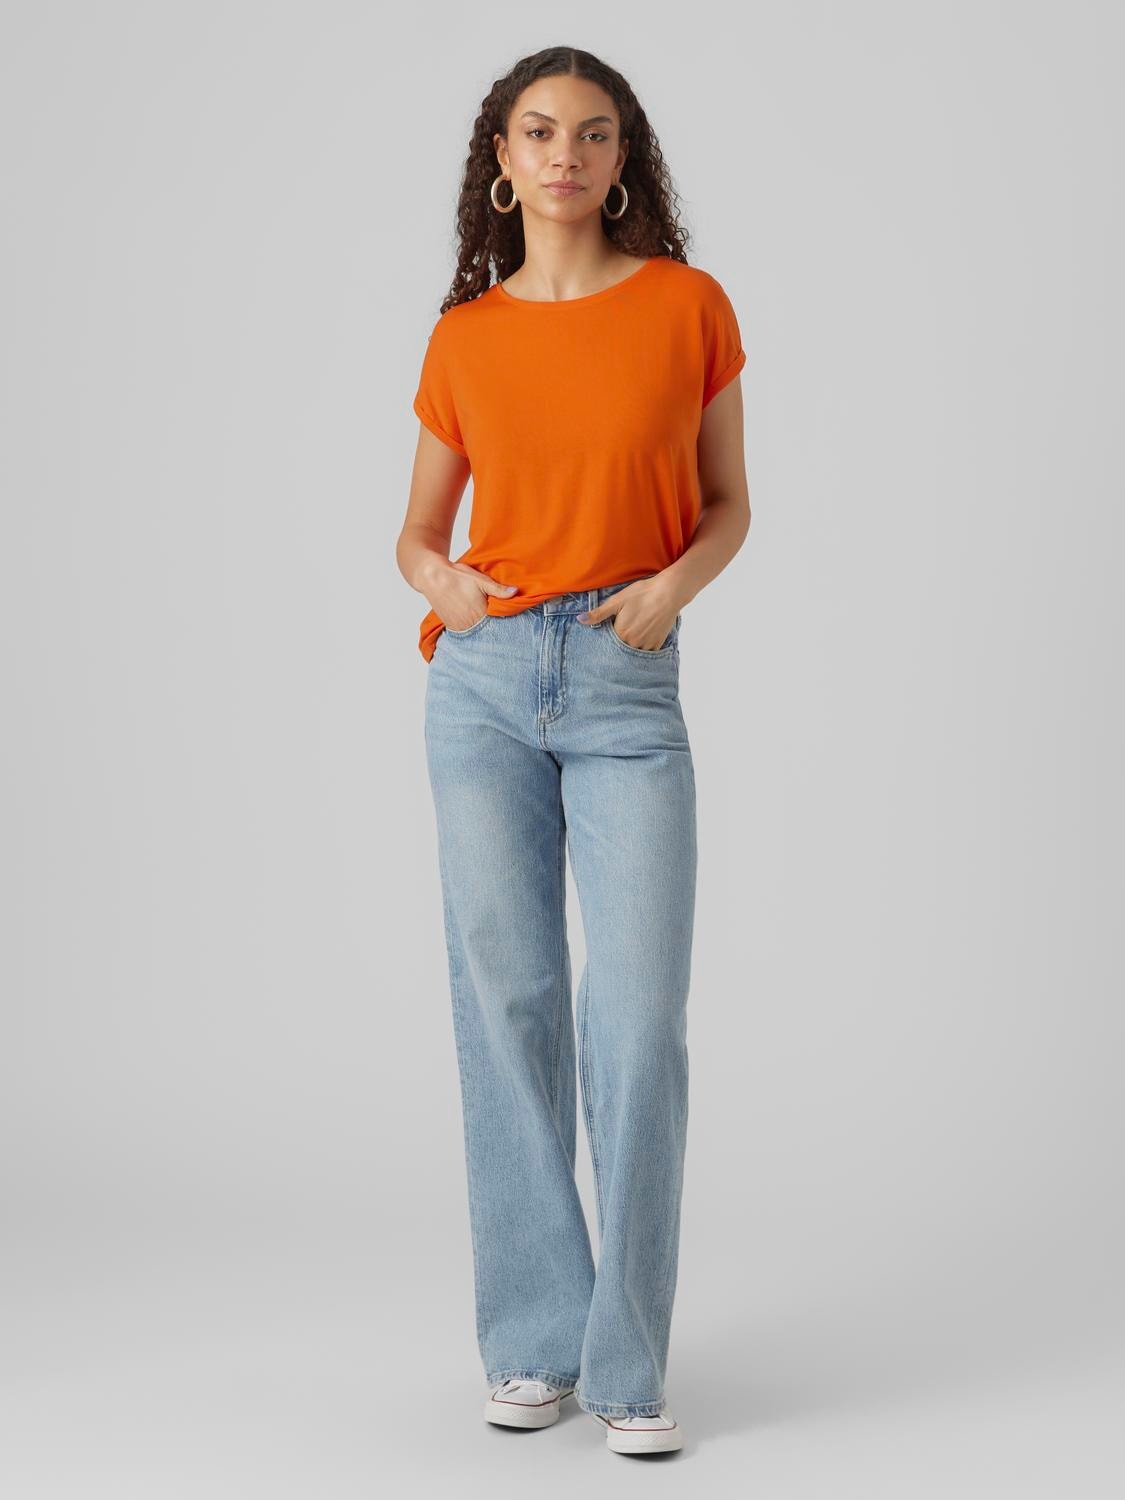 VMAVA T-Shirt | Moda® Orange Vero | Medium